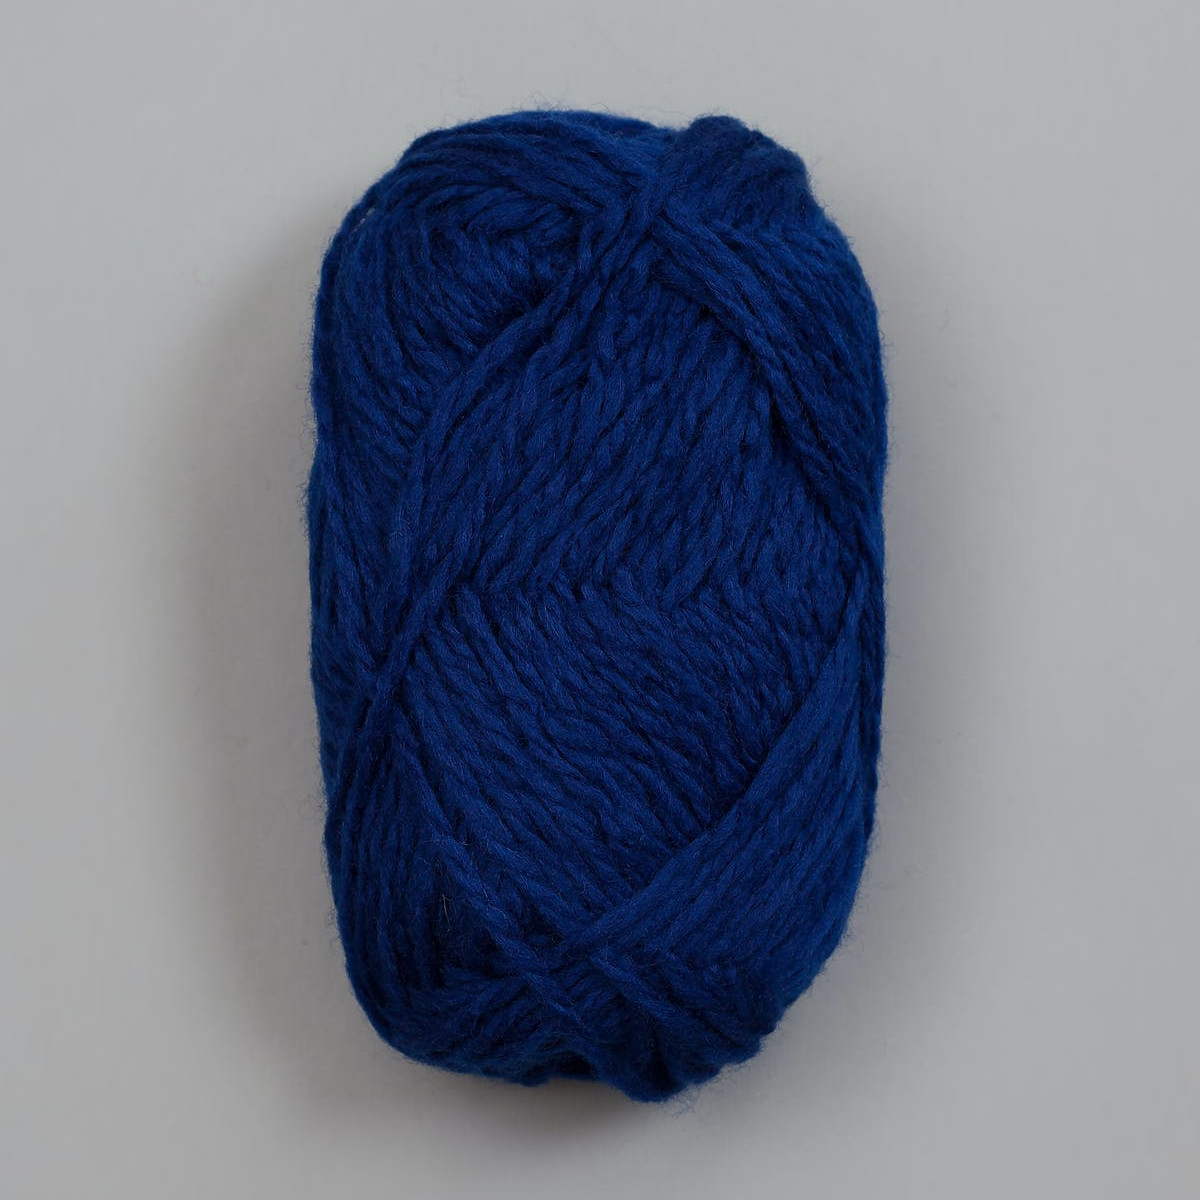 Vams - Mørk blå / Dunkelblau (67)